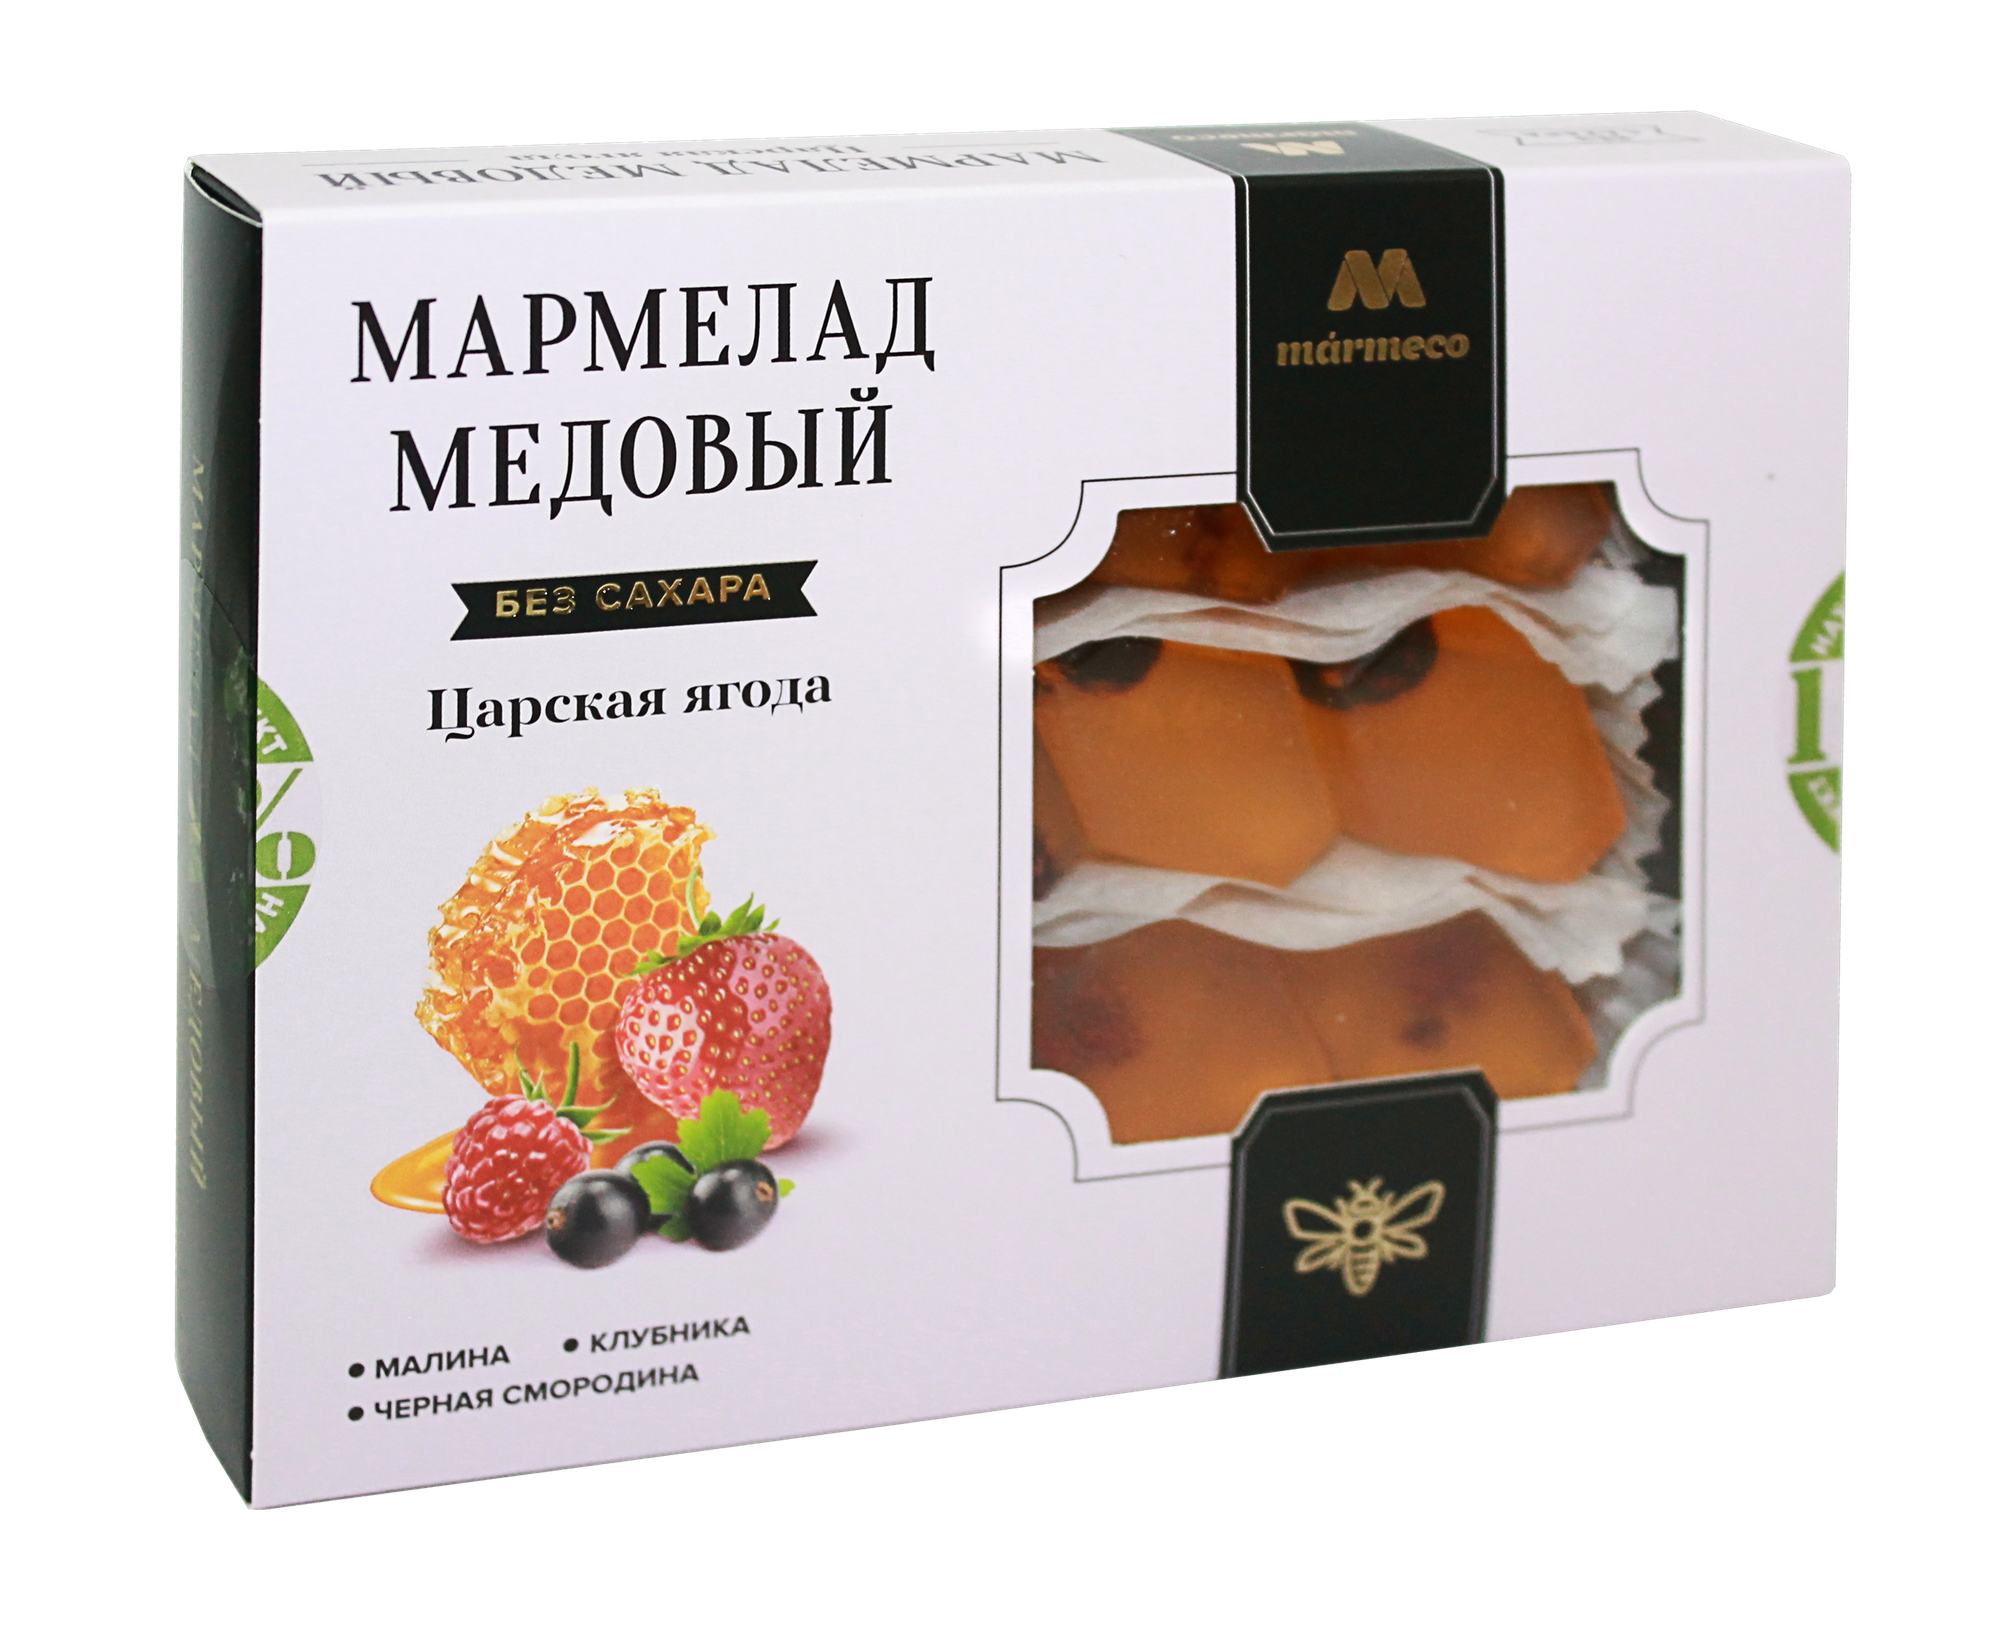 Мармелад медовый "Царская ягода", с малиной, клубникой, смородиной, без сахара